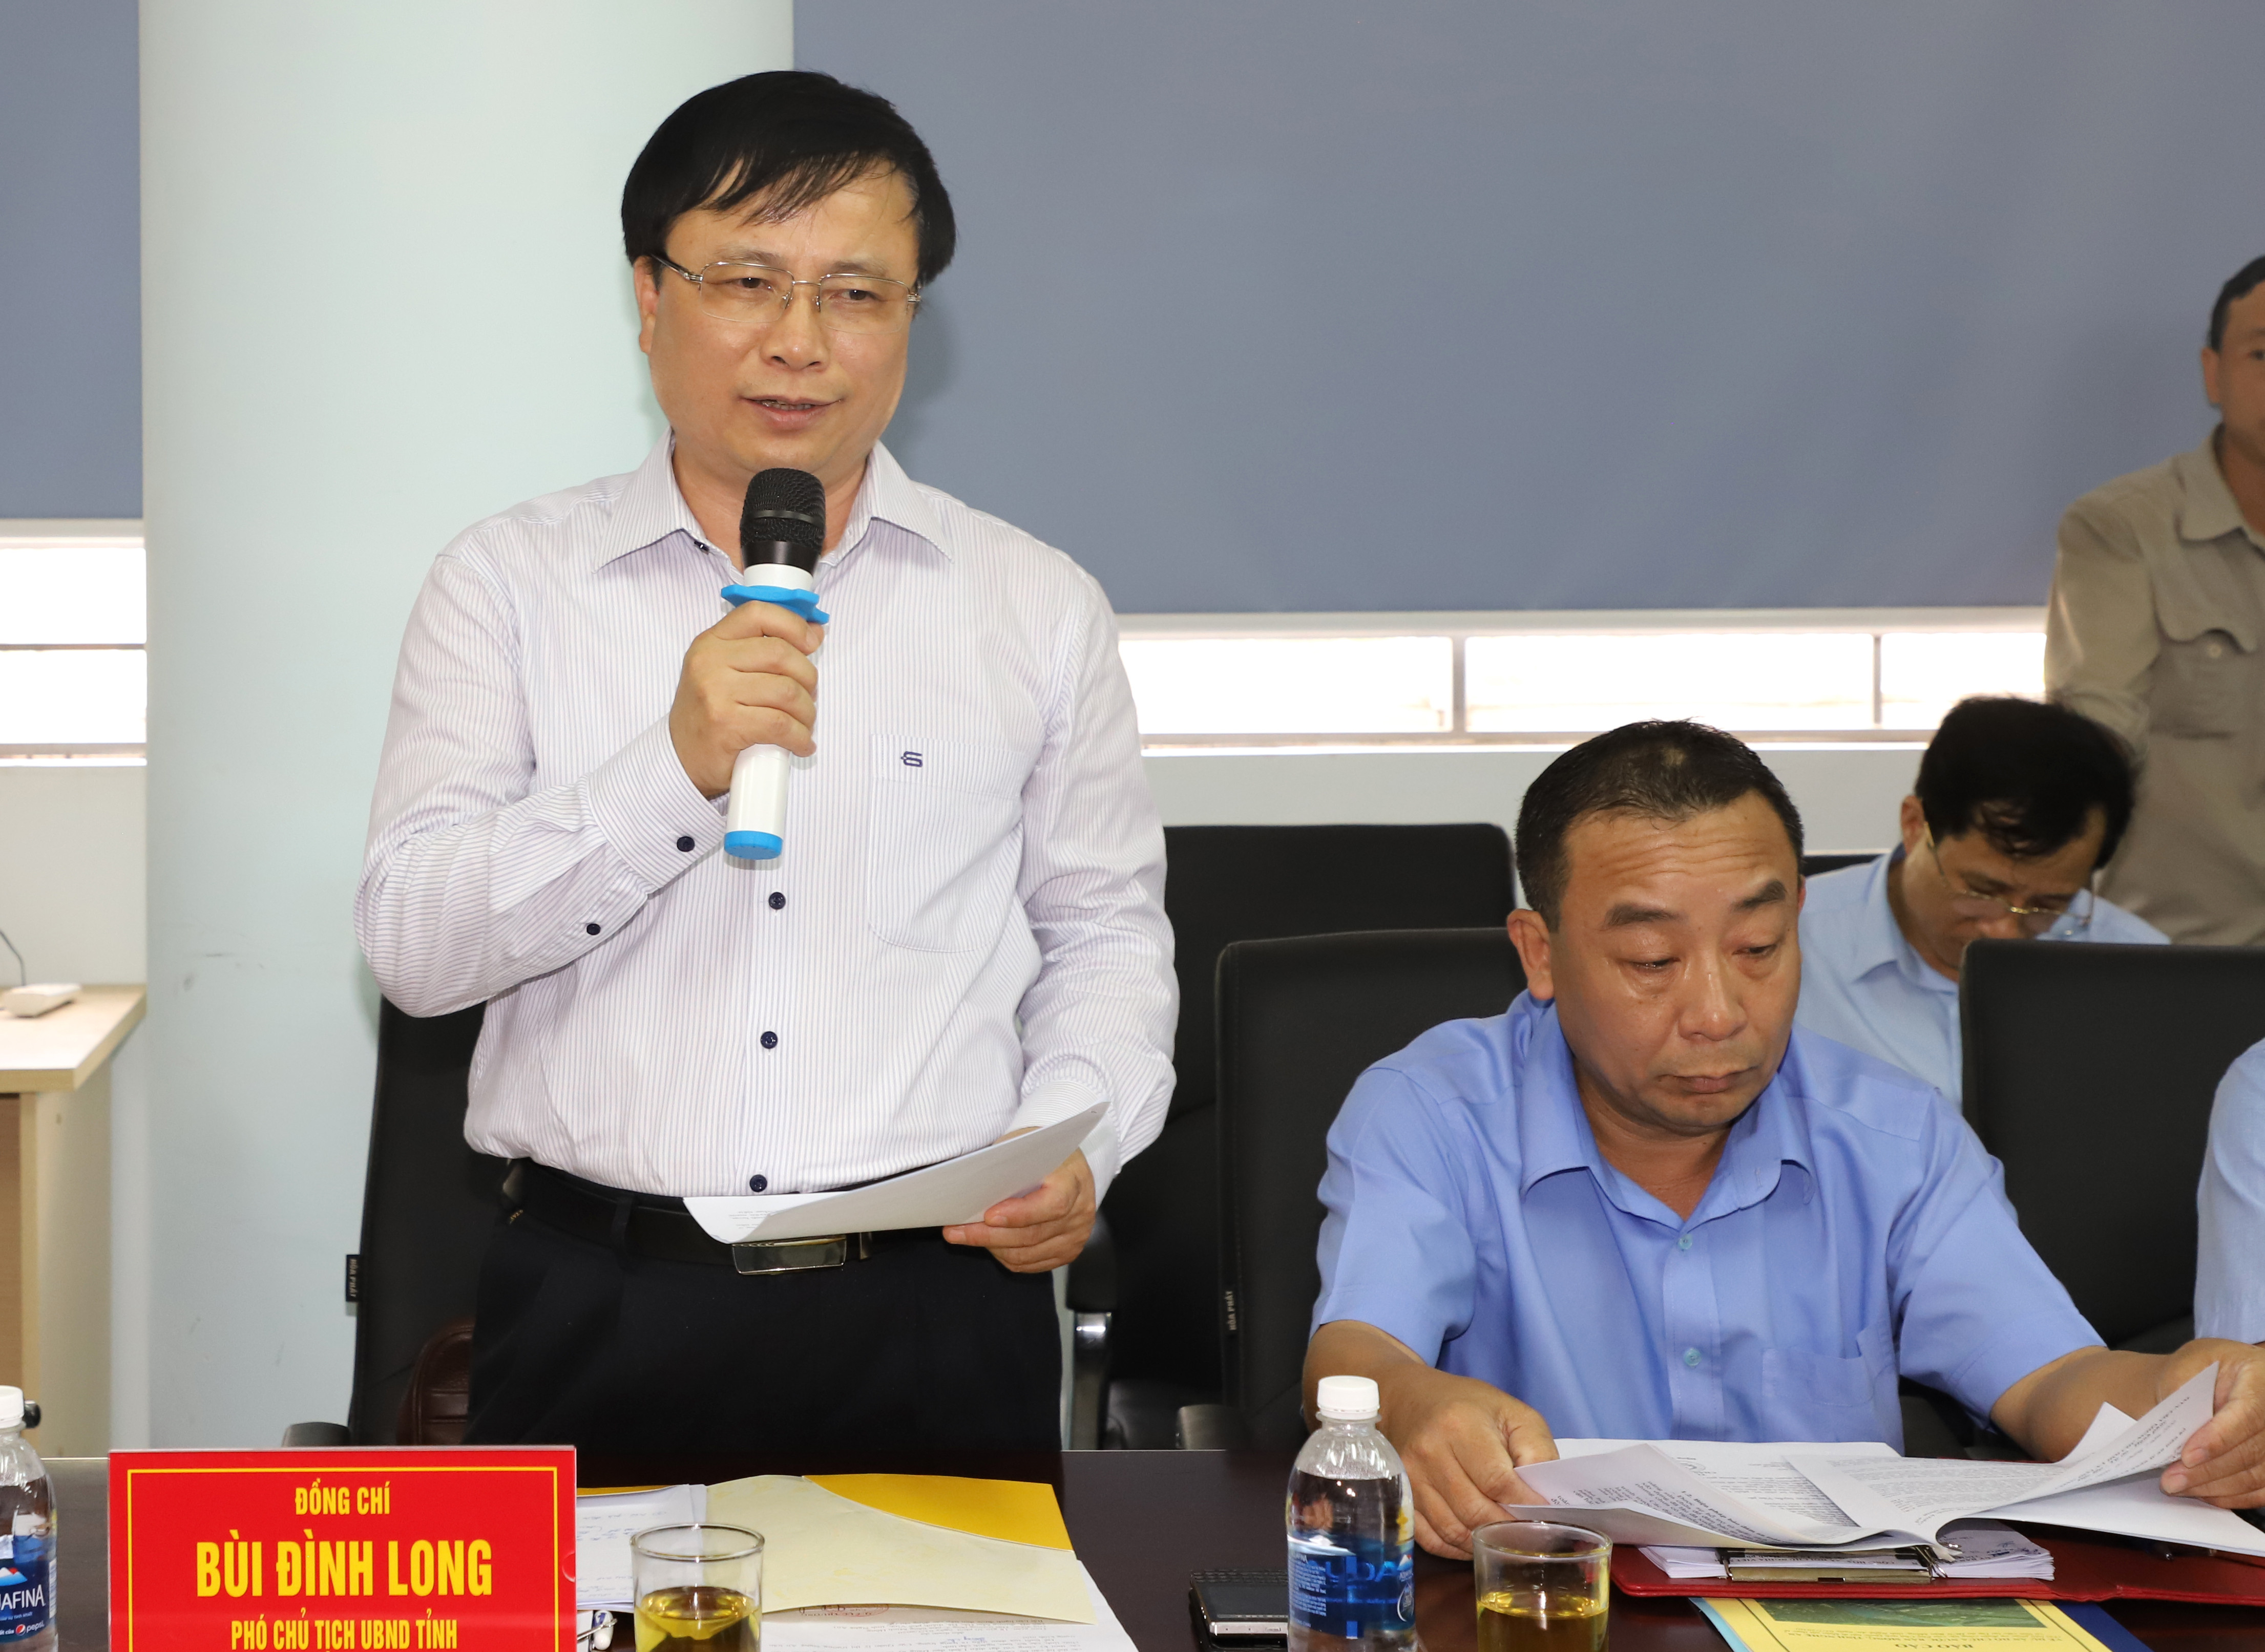 Phó Chủ tịch UBND tỉnh Bùi Đình Long phát biểu tại buổi làm việc. Ảnh: Phạm Bằng